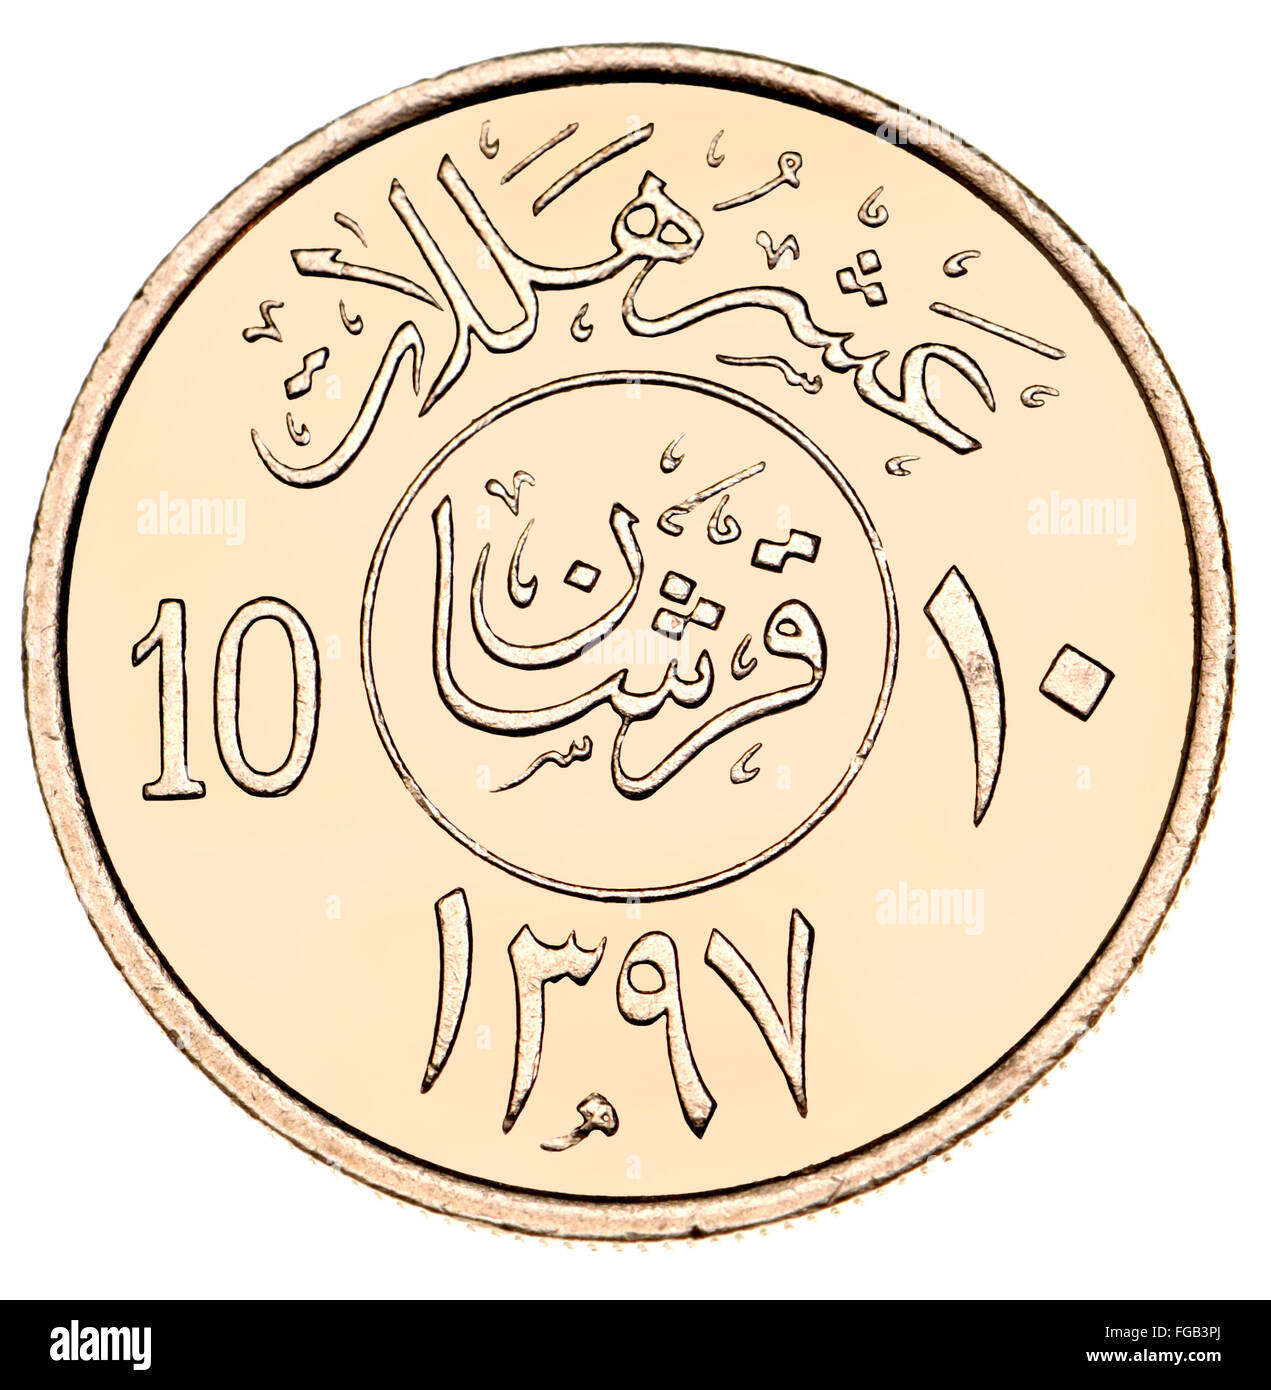 10 Halala moneta di Arabia Saudita che mostra la scrittura araba e simboli (cupro-nickel) e data 1397 (1977) del calendario islamico Foto Stock